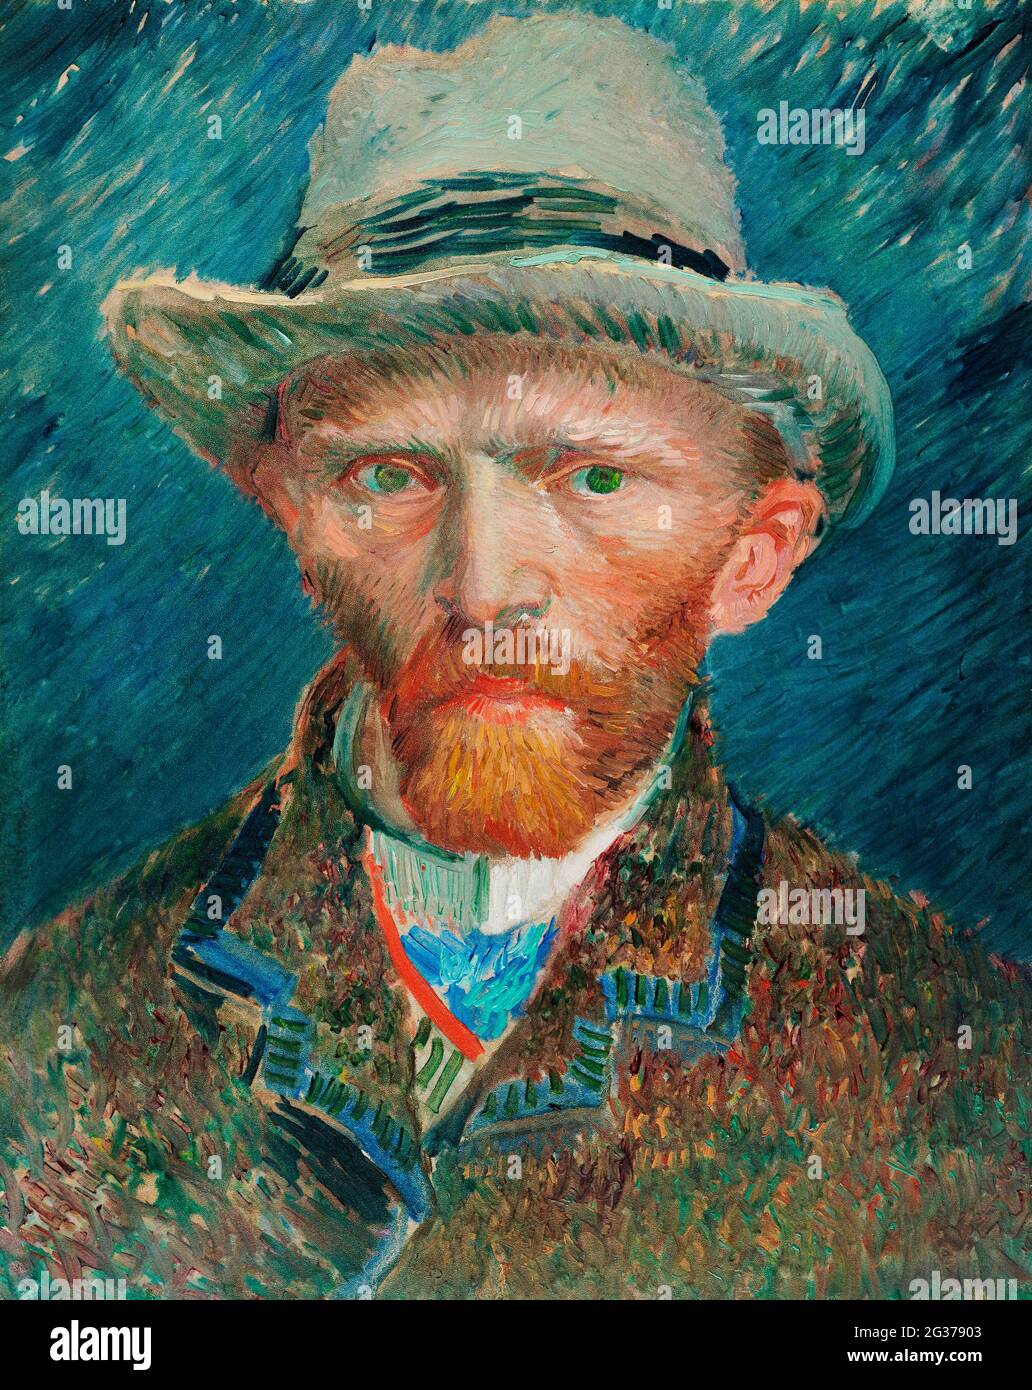 Vincent Van Gogh Selbstporträt mit verbundenem Ohr & Rohr 1889  Stockfotografie - Alamy